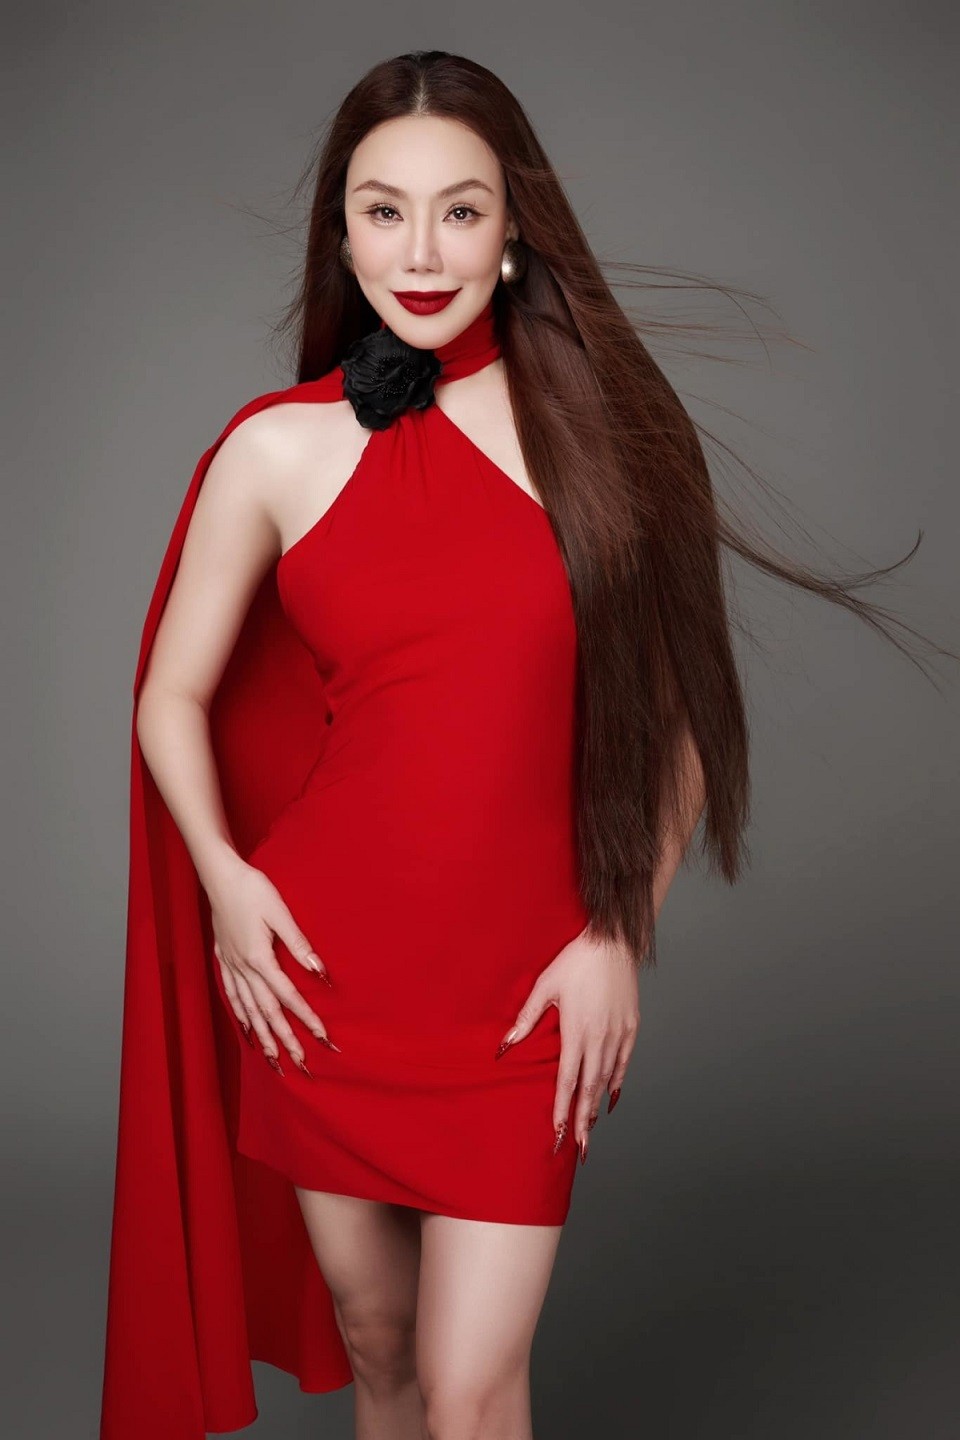 Khác với phong cách trước đây, nữ ca sĩ Hồ Quỳnh Hương được khán giả nhận xét trông khác lạ khi mặc đầm đỏ rực cổ yếm, kiểu dáng khoe vòng eo.